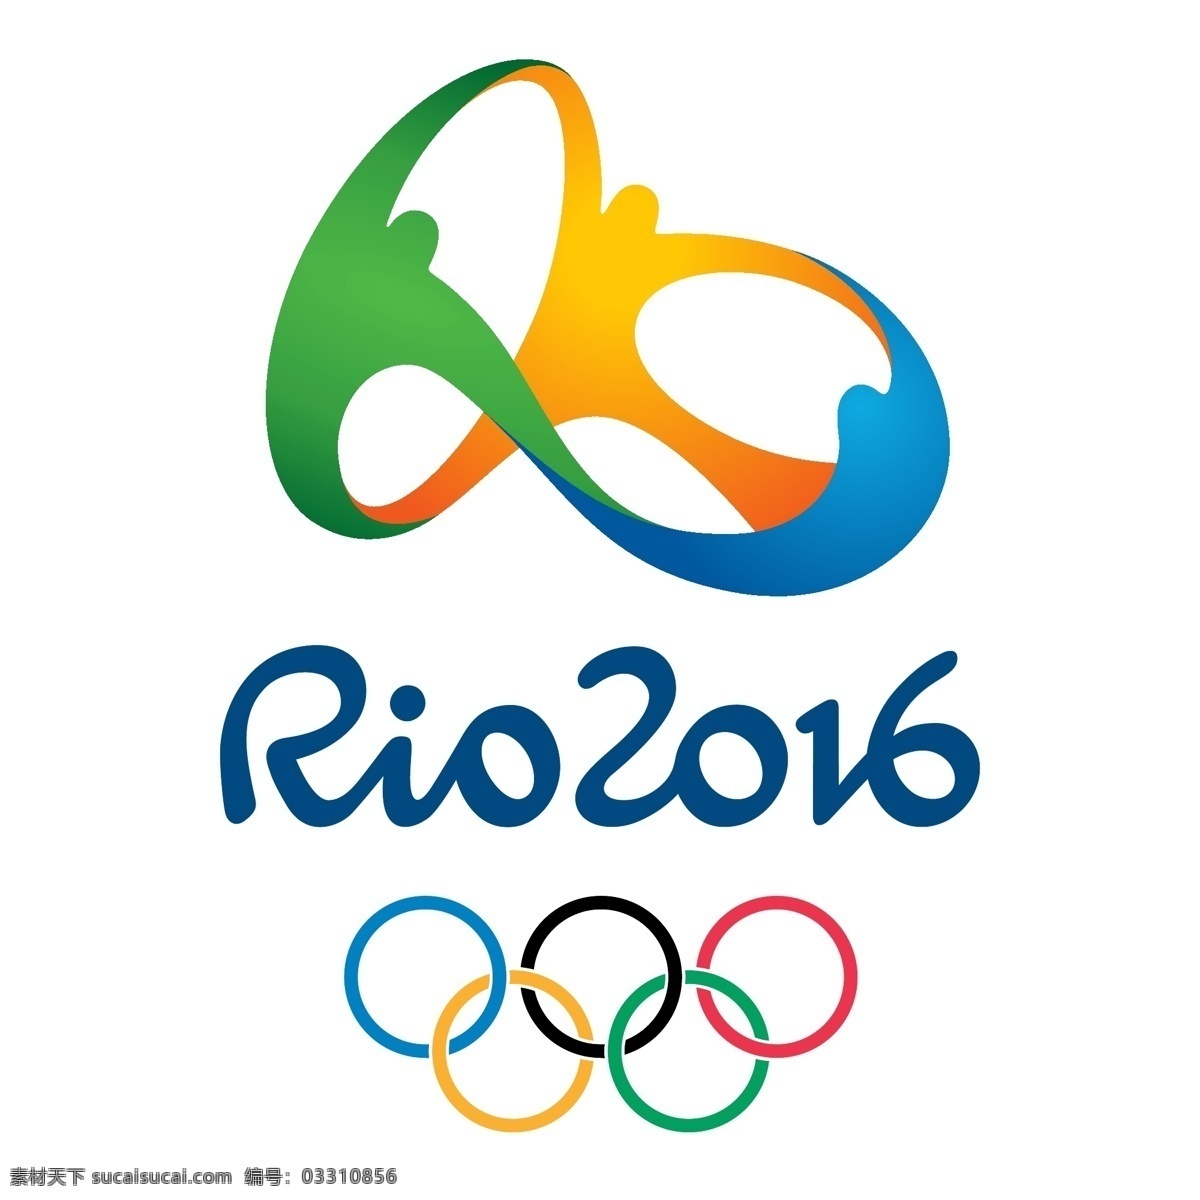 2016 里约 奥运会 logo rio de janeiro olympic games 标志 奥运会标志 里约奥运会 里约热内卢 巴西奥运会 2016巴西 第31届 夏季 奥林匹克 运动会 运动 体育 sport 竞技 矢量 标志图标 其他图标